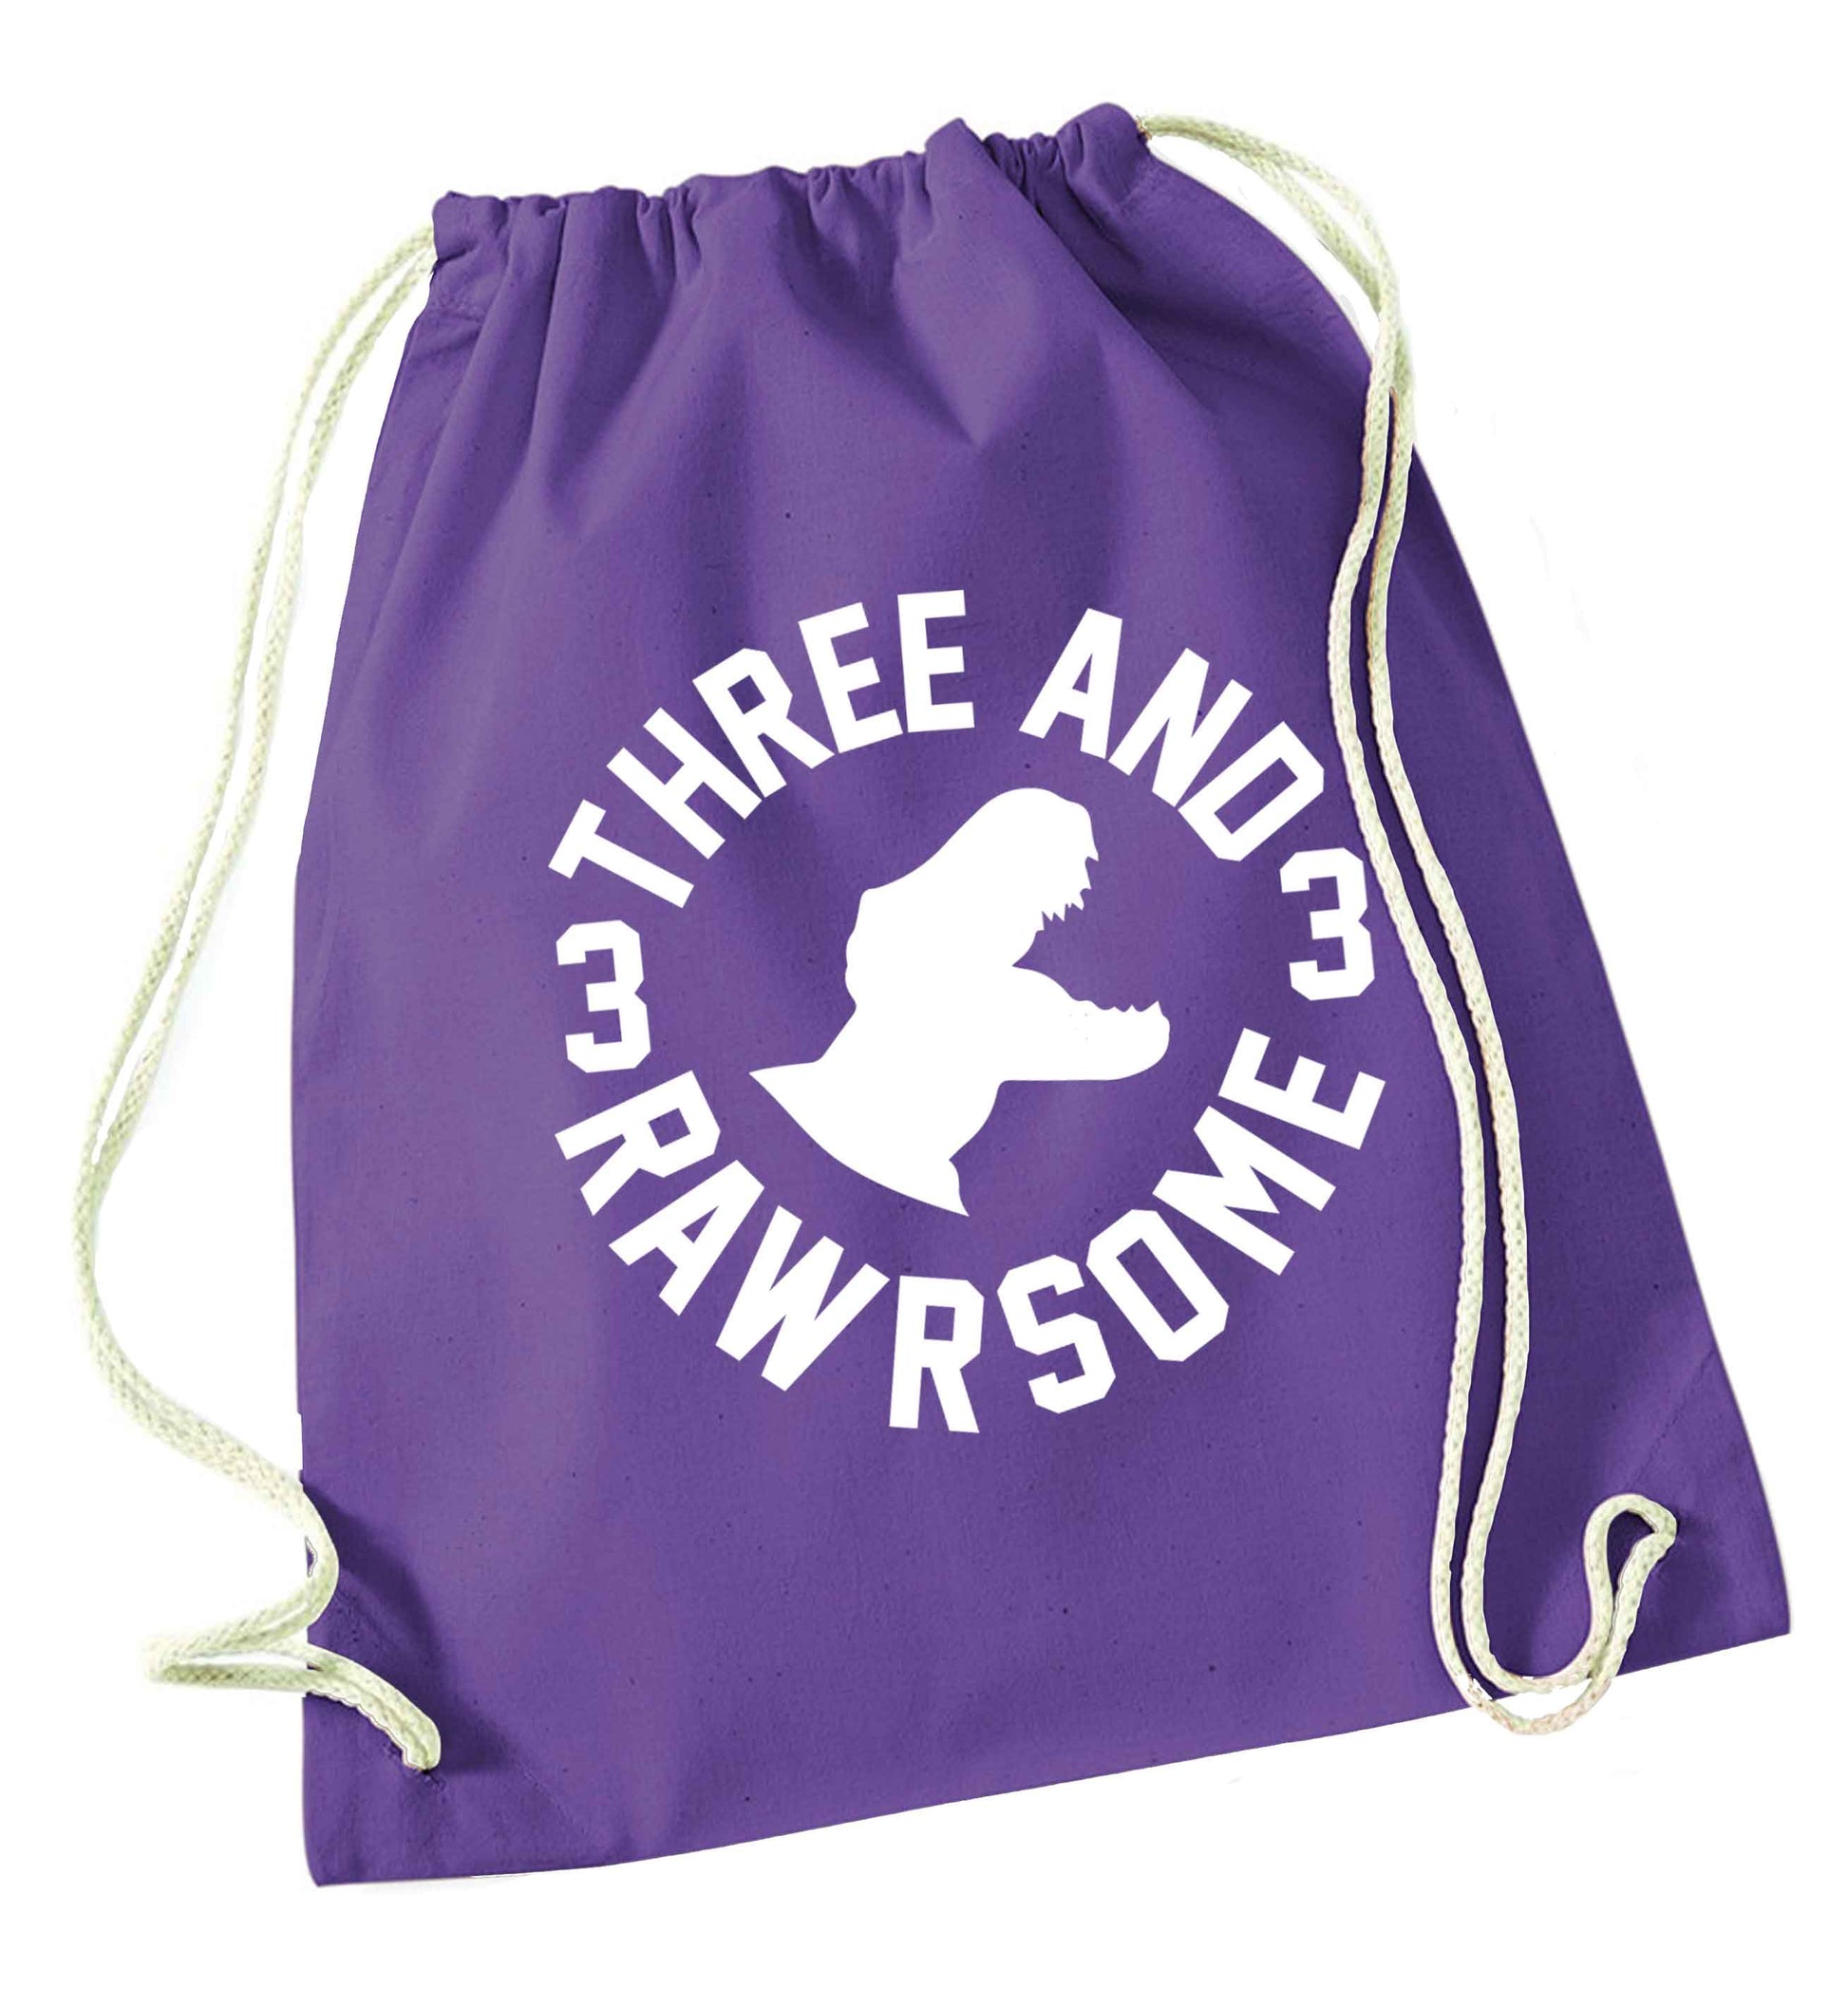 Three and rawrsome purple drawstring bag